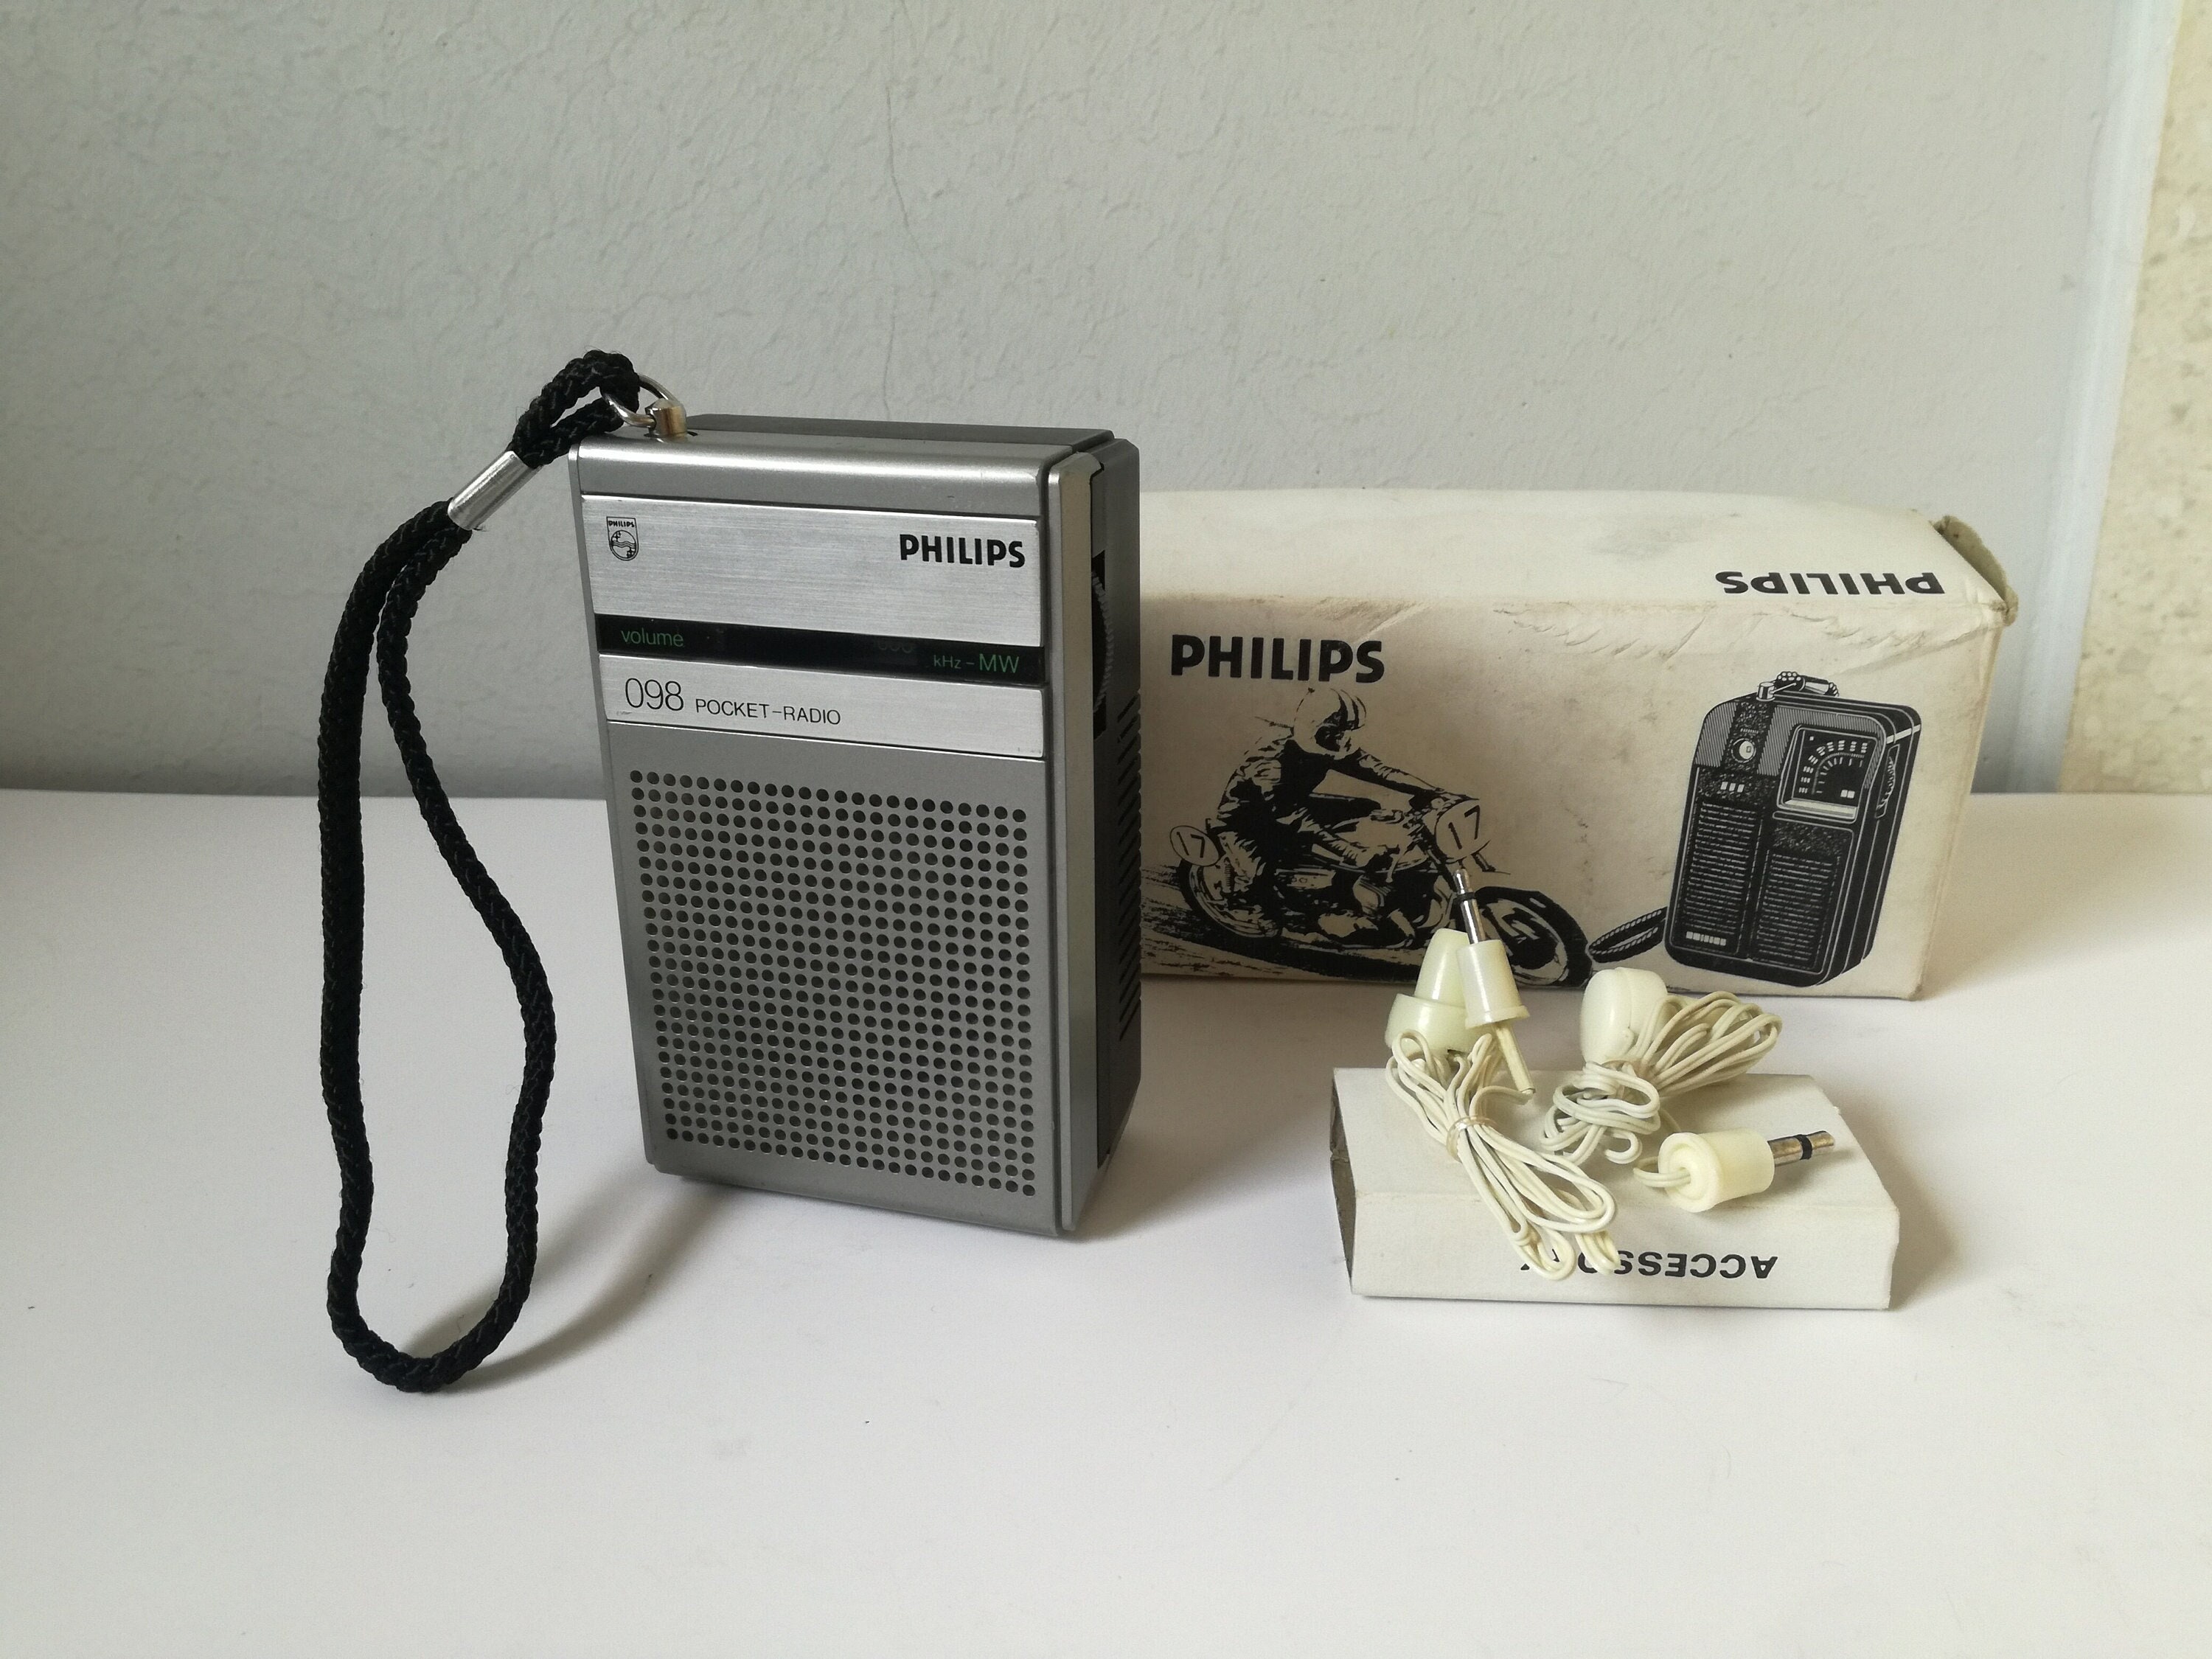 La radio para la cocina de Philips no es resistente, es retro